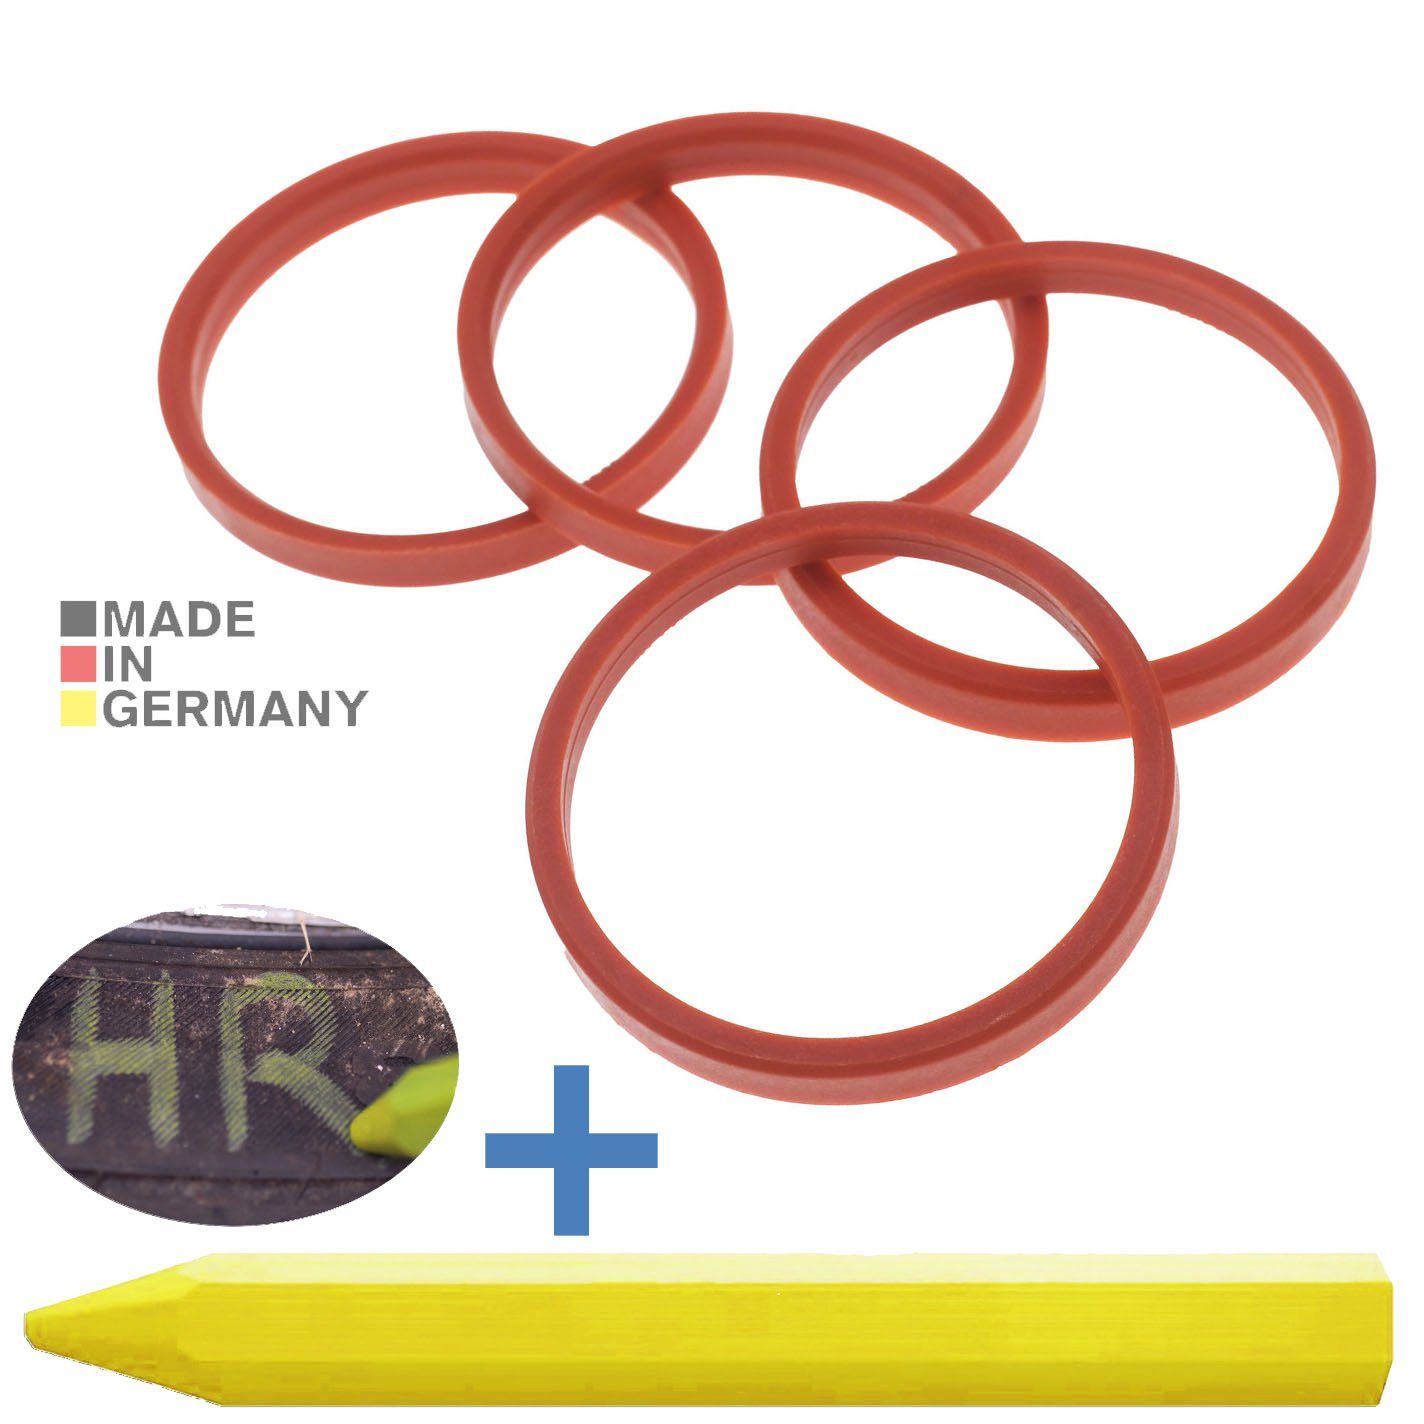 RKC Reifenstift 4X Fett Ringe mm Rot x Reifen 72,0 Zentrierringe Maße: + Stift, 1x Kreide Felgen 63,4